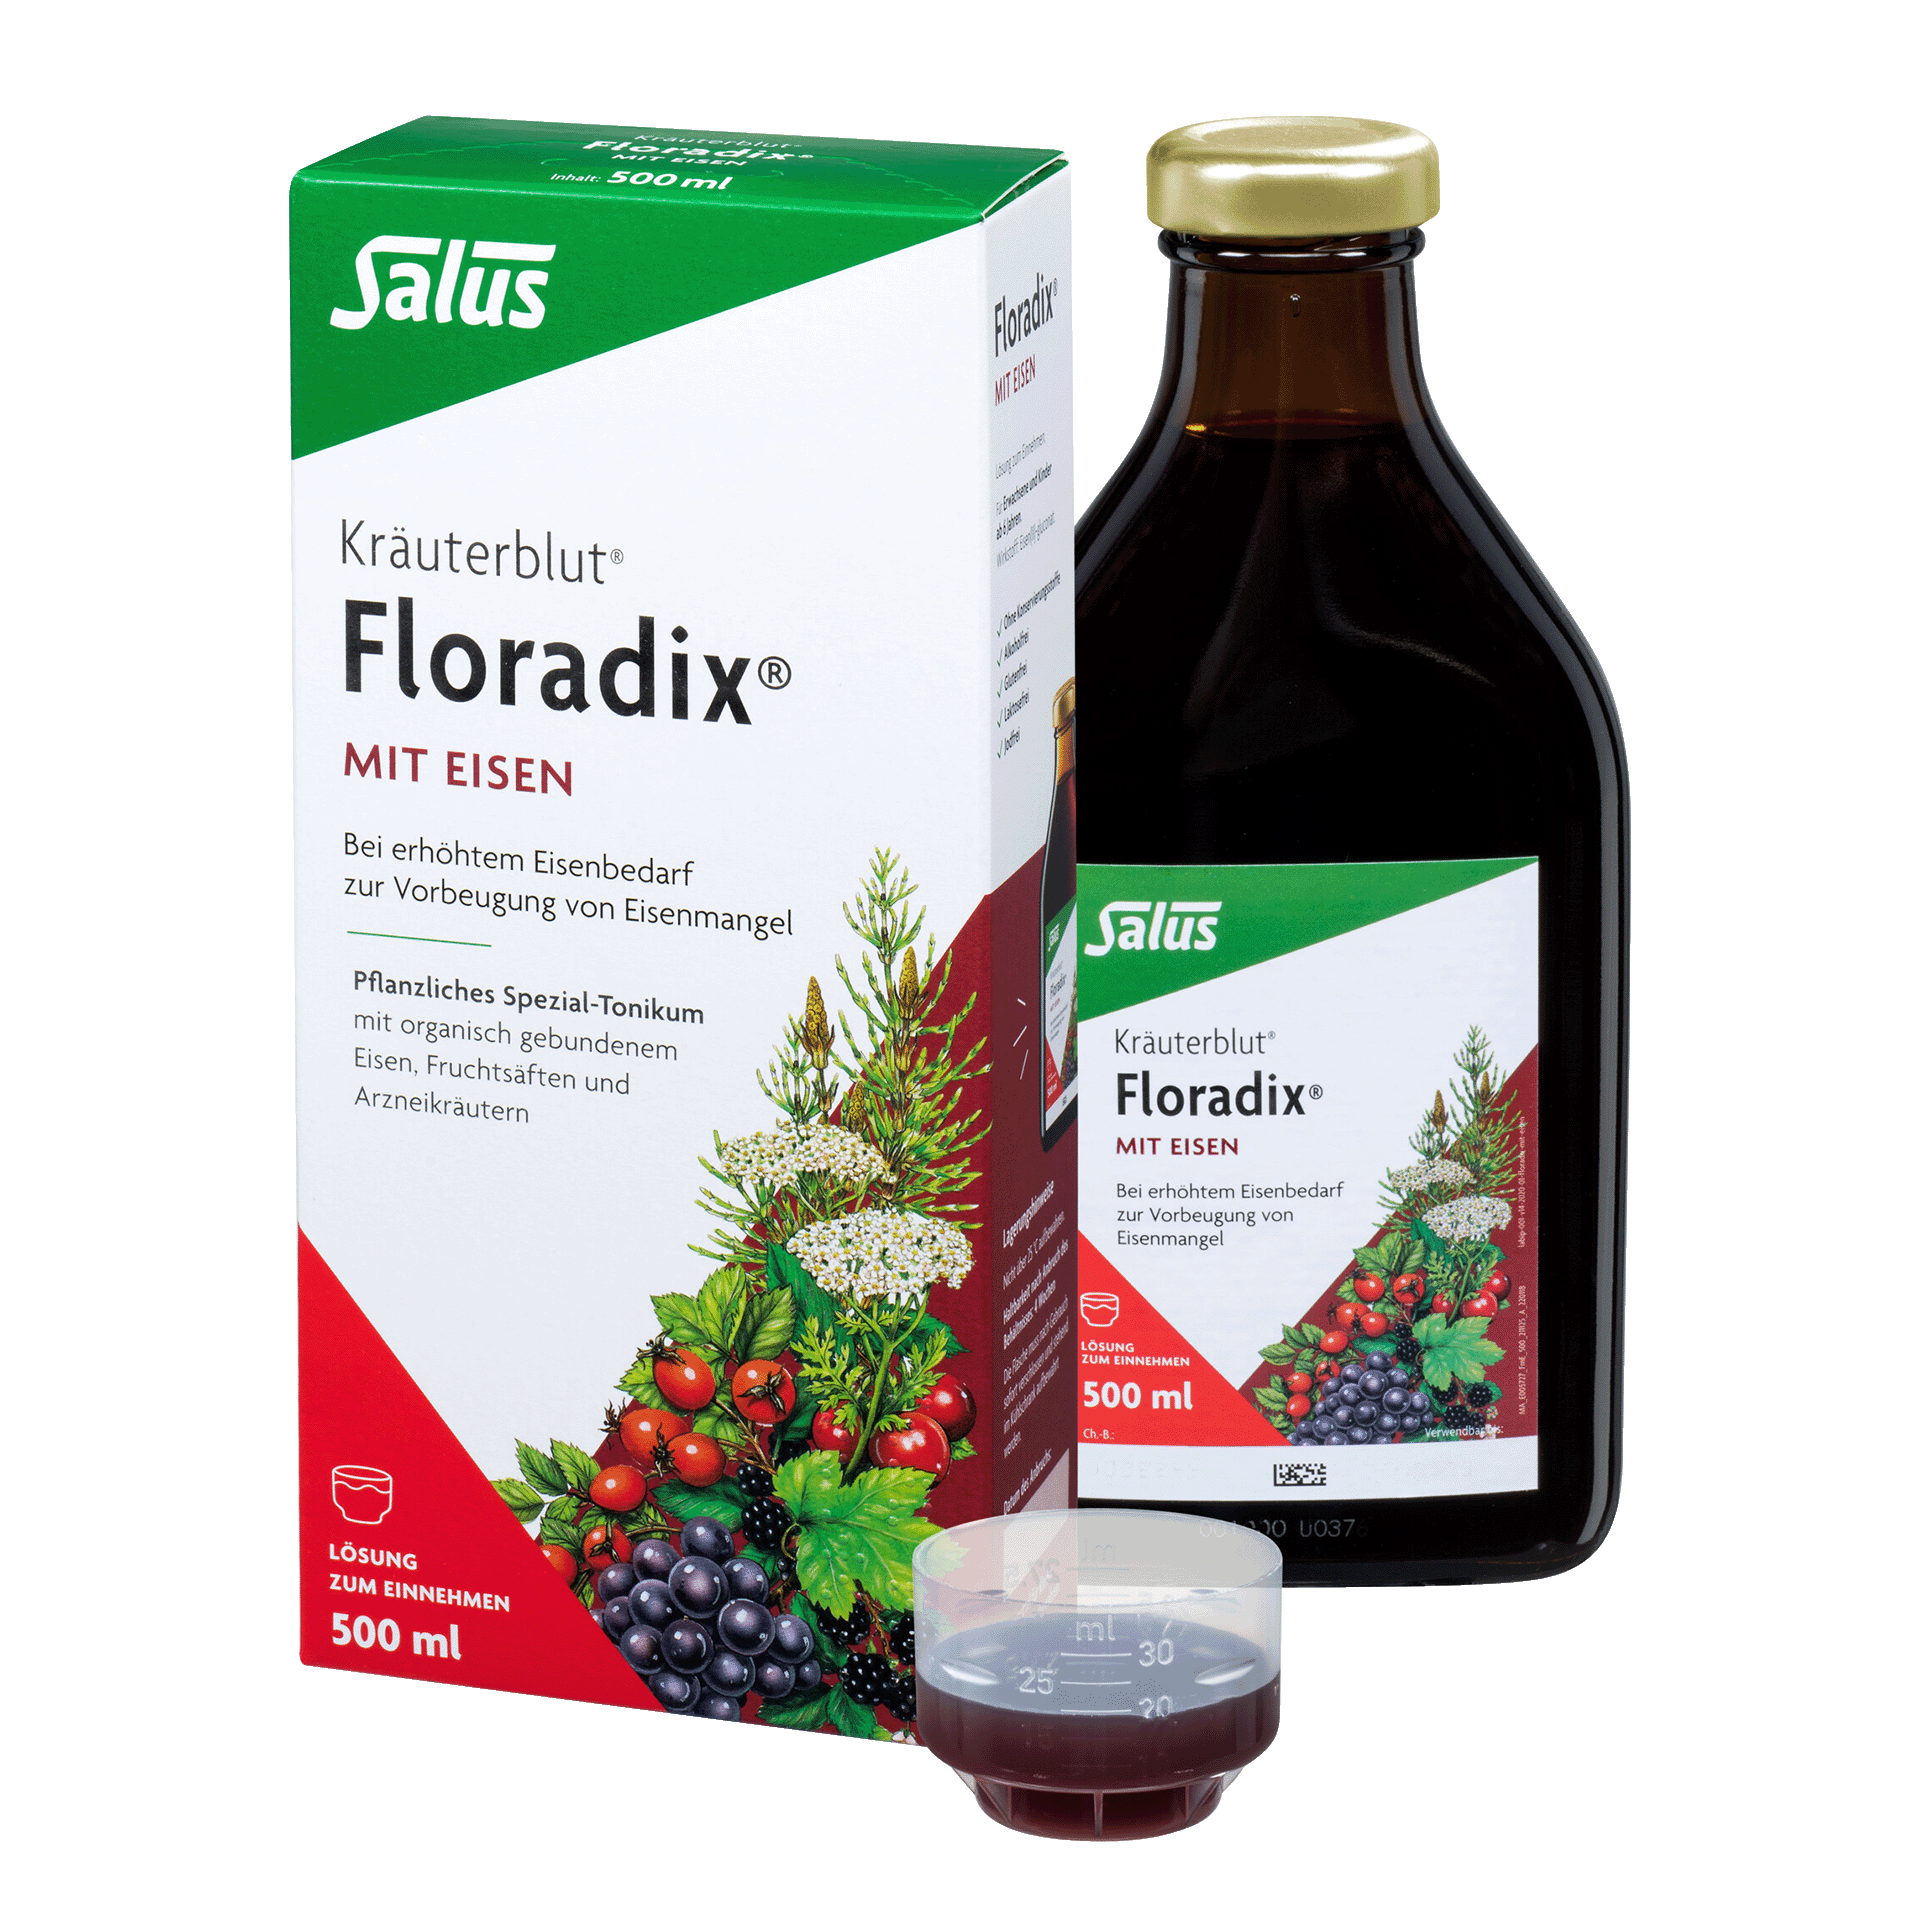 Kräuterblut Floradix mit Eisen, 500 ml